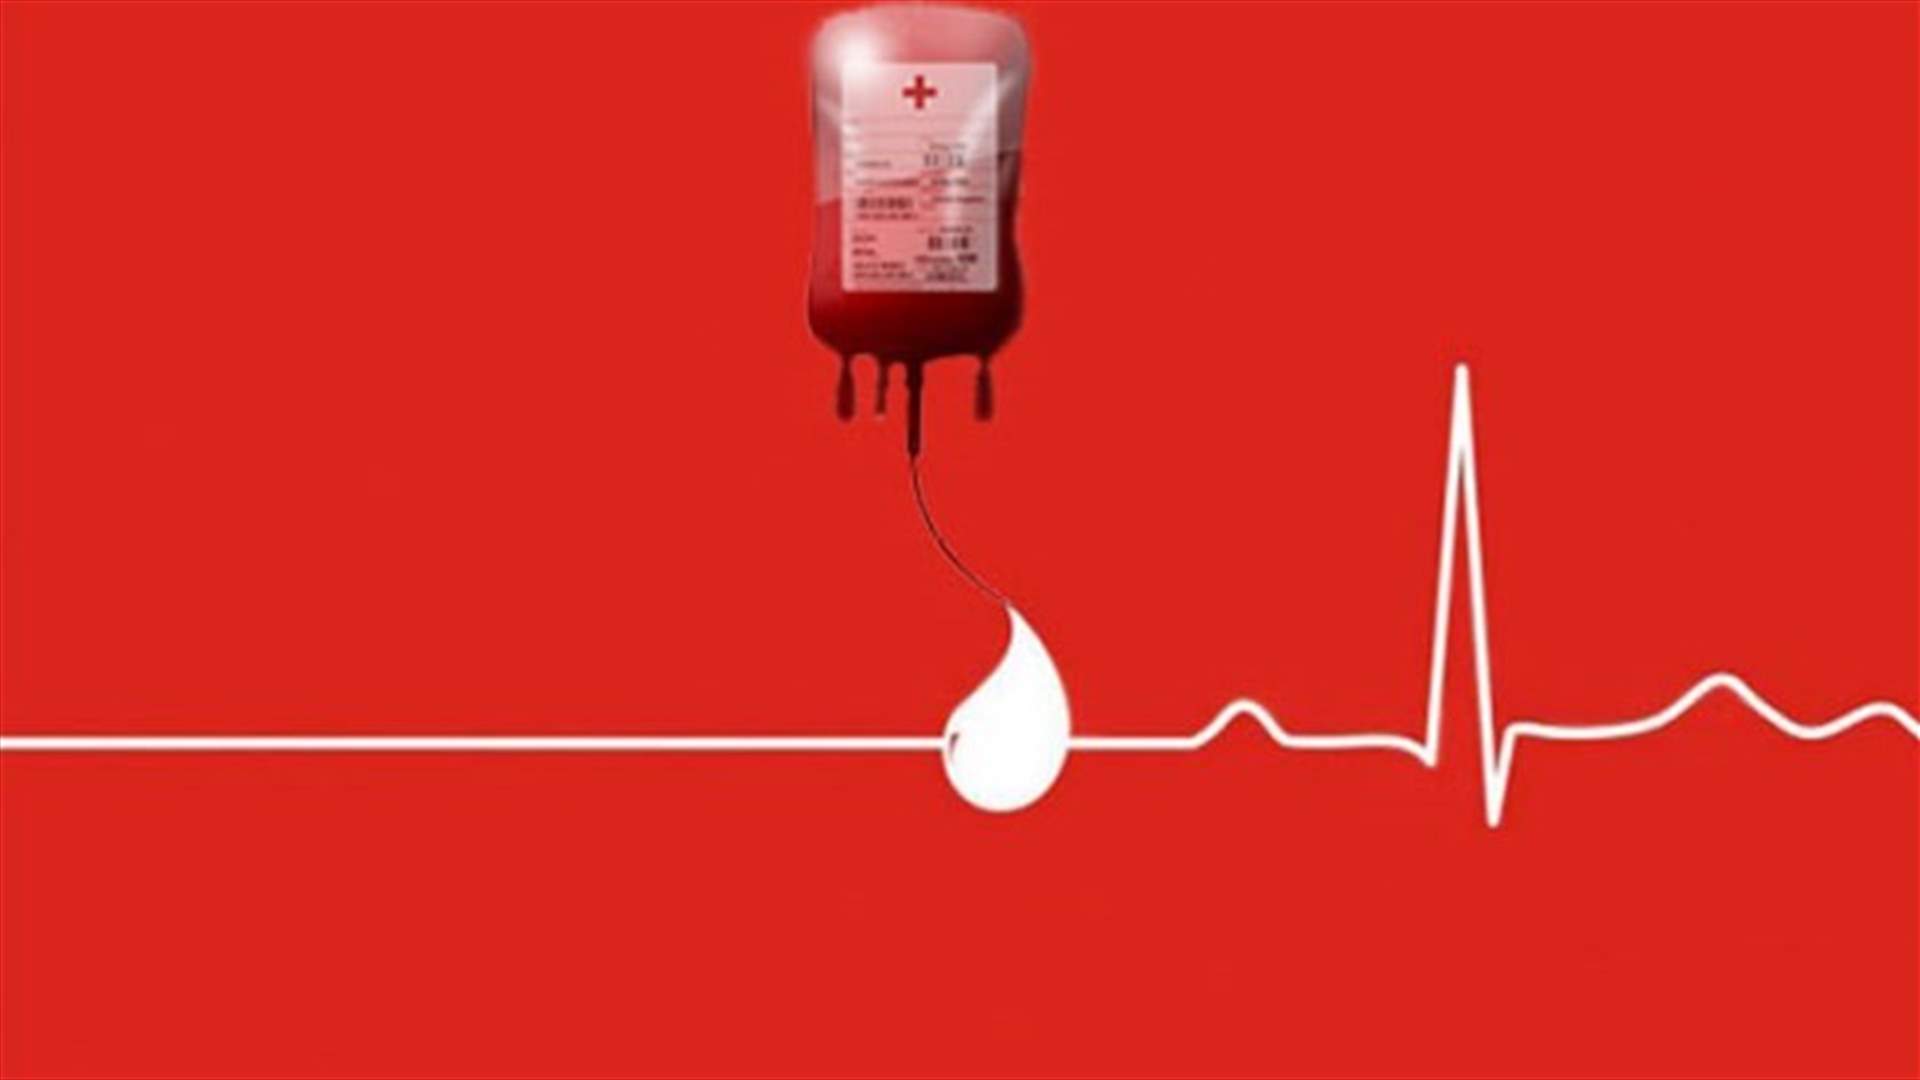 مريض في مستشفى اوتيل ديو بحاجة ماسة لوحدات دم من فئة A+... للتبرع الرجاء الاتصال على الرقم التالي: 03950876